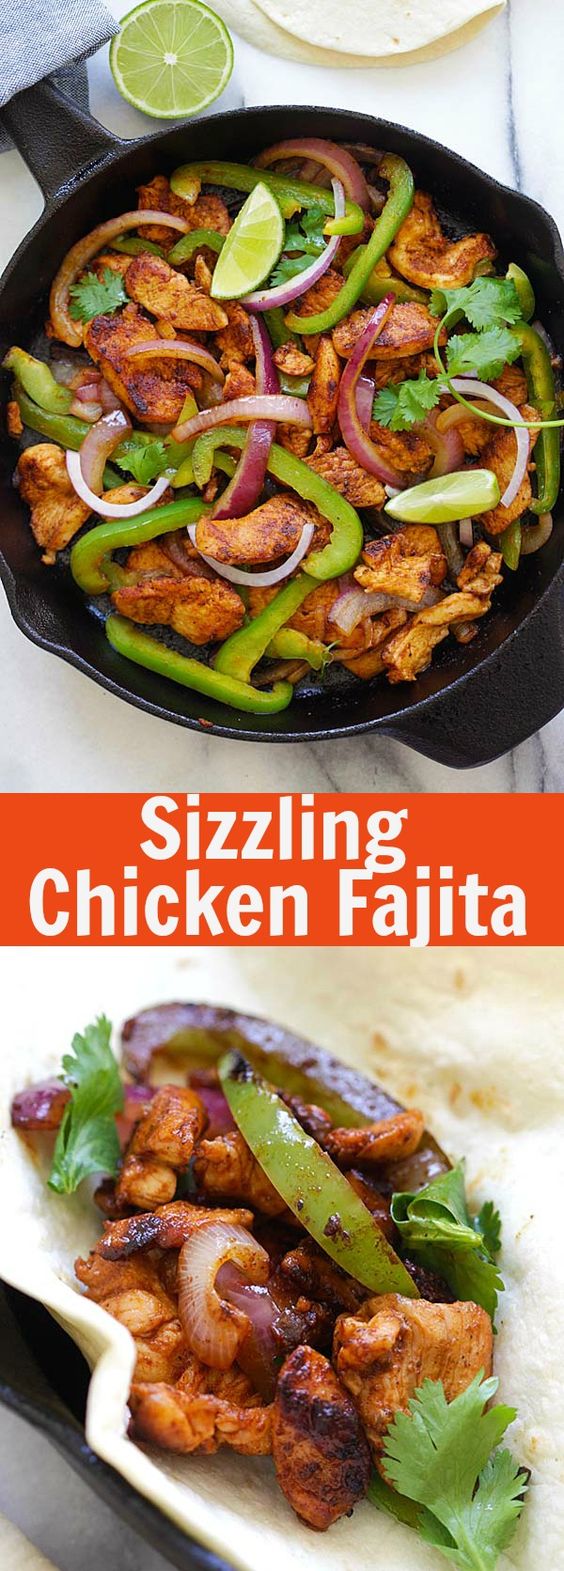 Sizzling Chicken Fajita | Easy Delicious Recipes